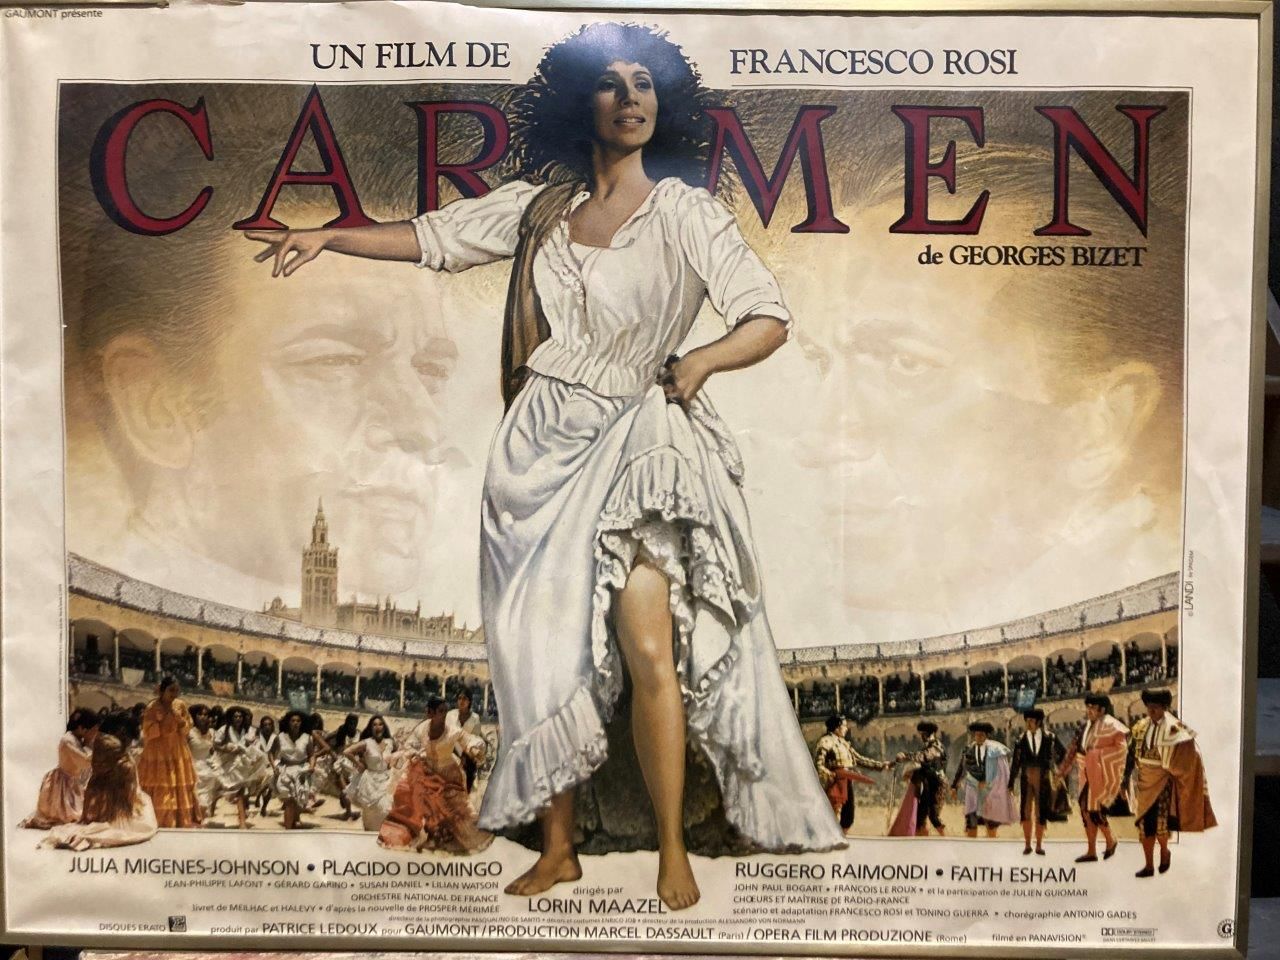 Fransceso Rosi CARMEN

Locandina del film

59 x 79 cm incorniciato